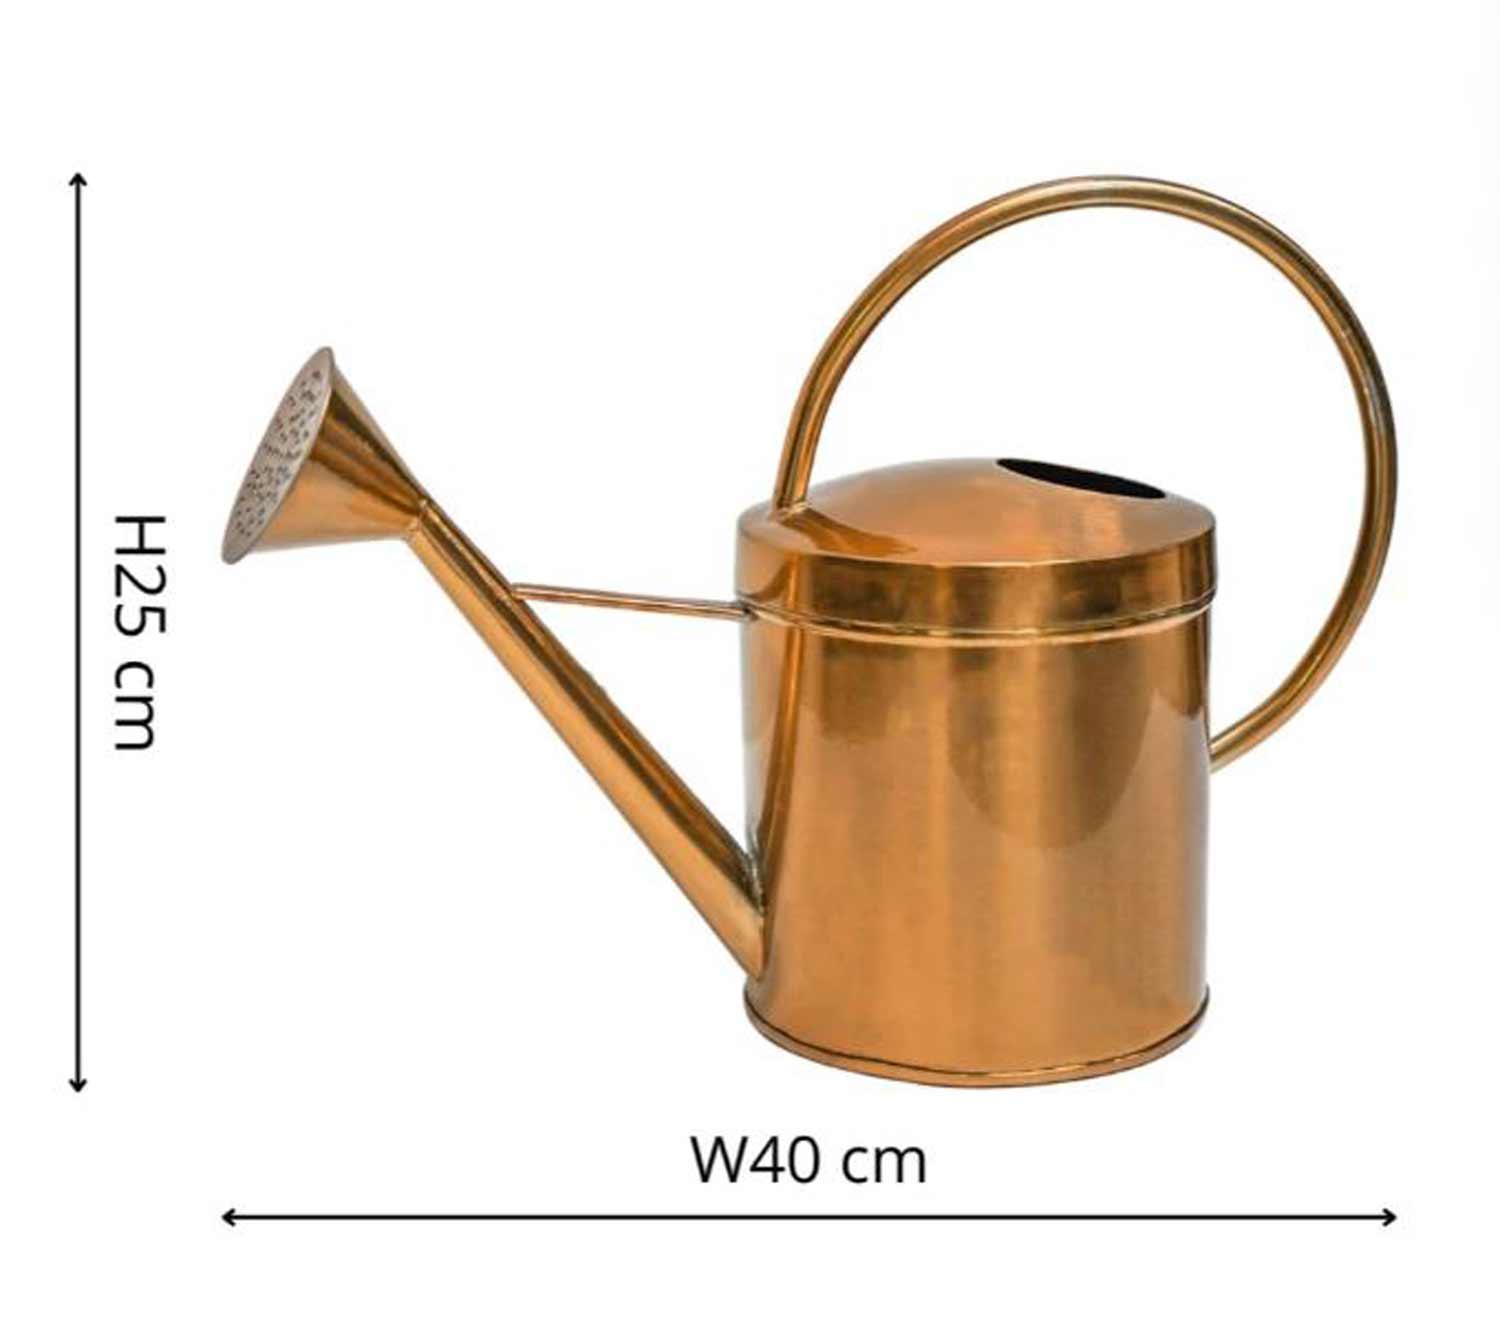 watering-can-3-kk.jpg